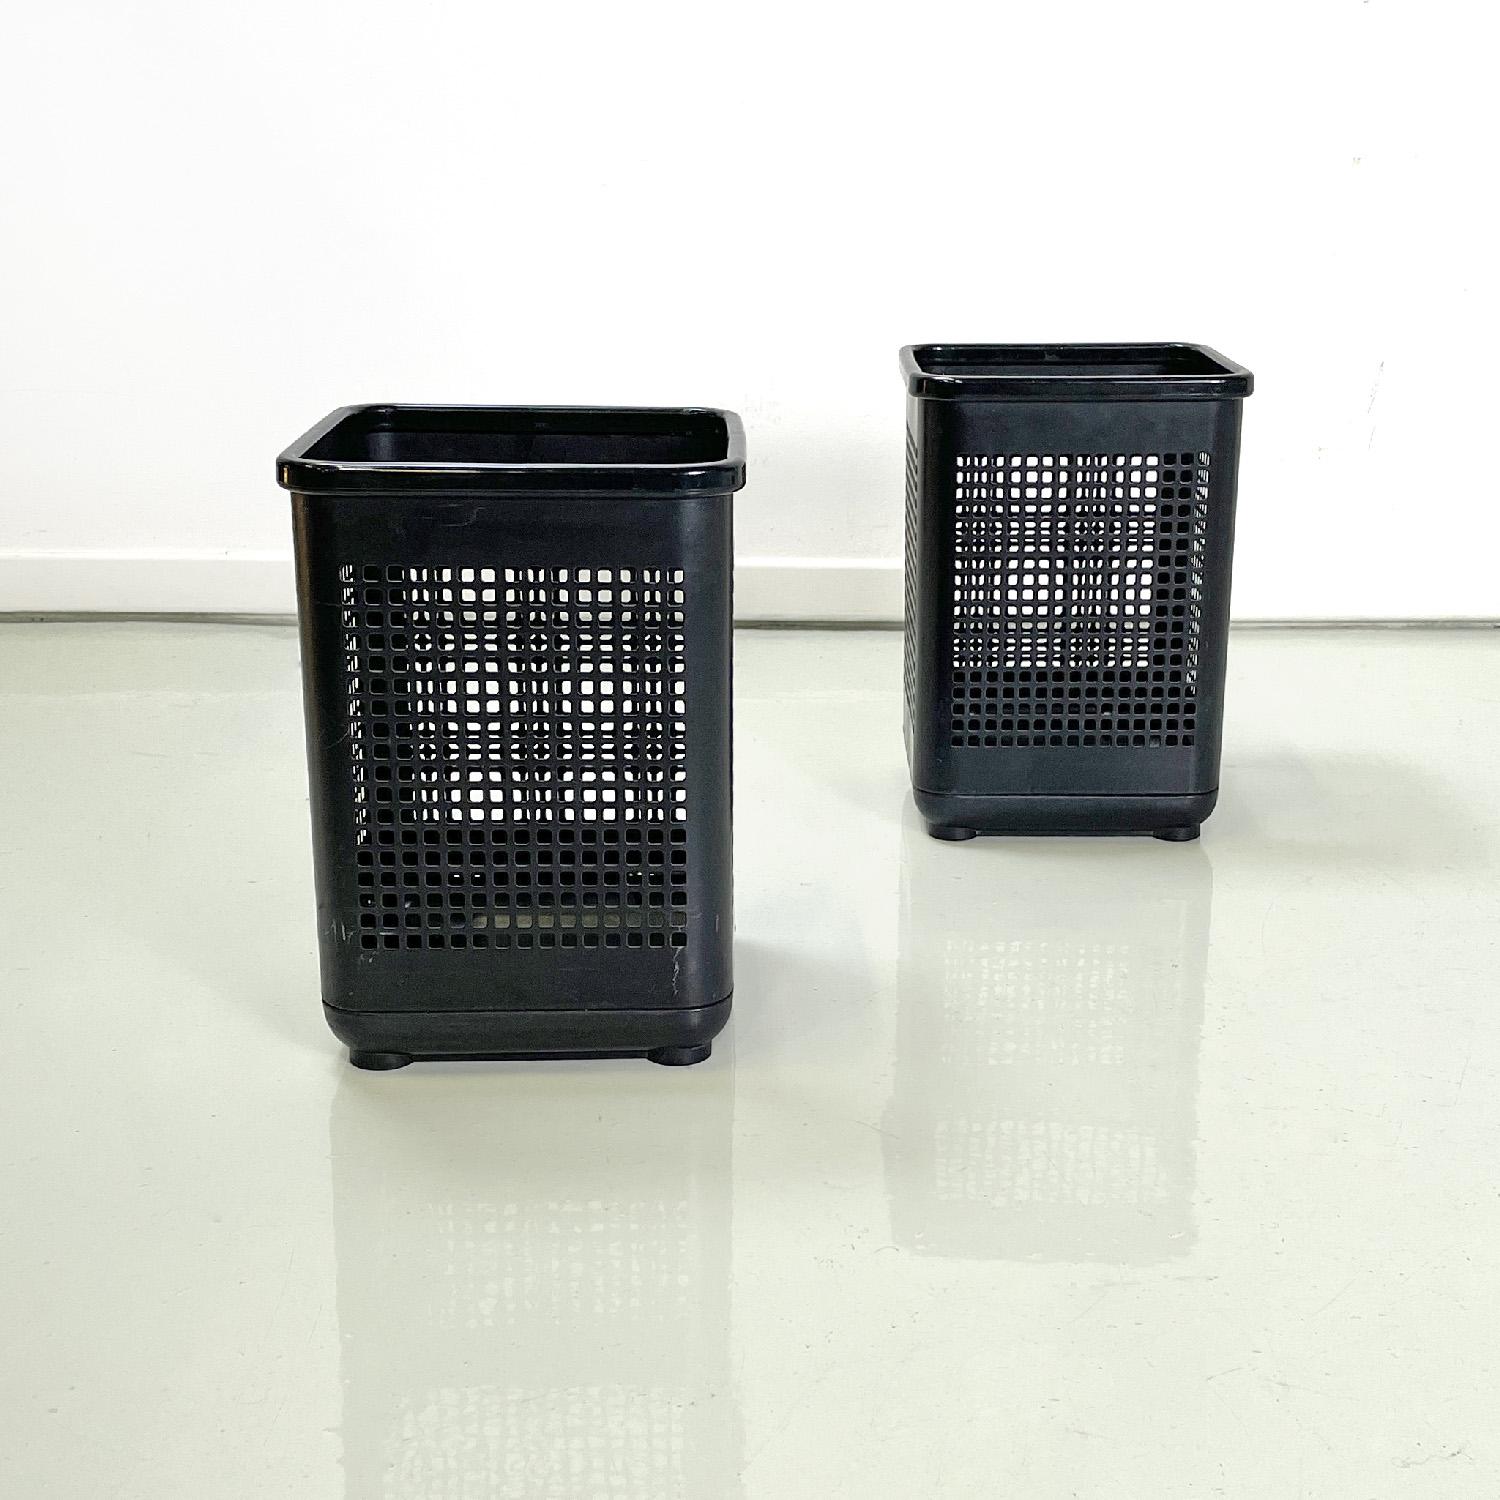 Moderne italienische Bürokörbe aus schwarzem Metall und Kunststoff von Neolt, 1980er Jahre
Ein Paar quadratische Bürokörbe. Die Hauptstruktur besteht aus gelochtem Blech mit quadratischen Löchern und ist schwarz lackiert mit einem matten Finish. Die